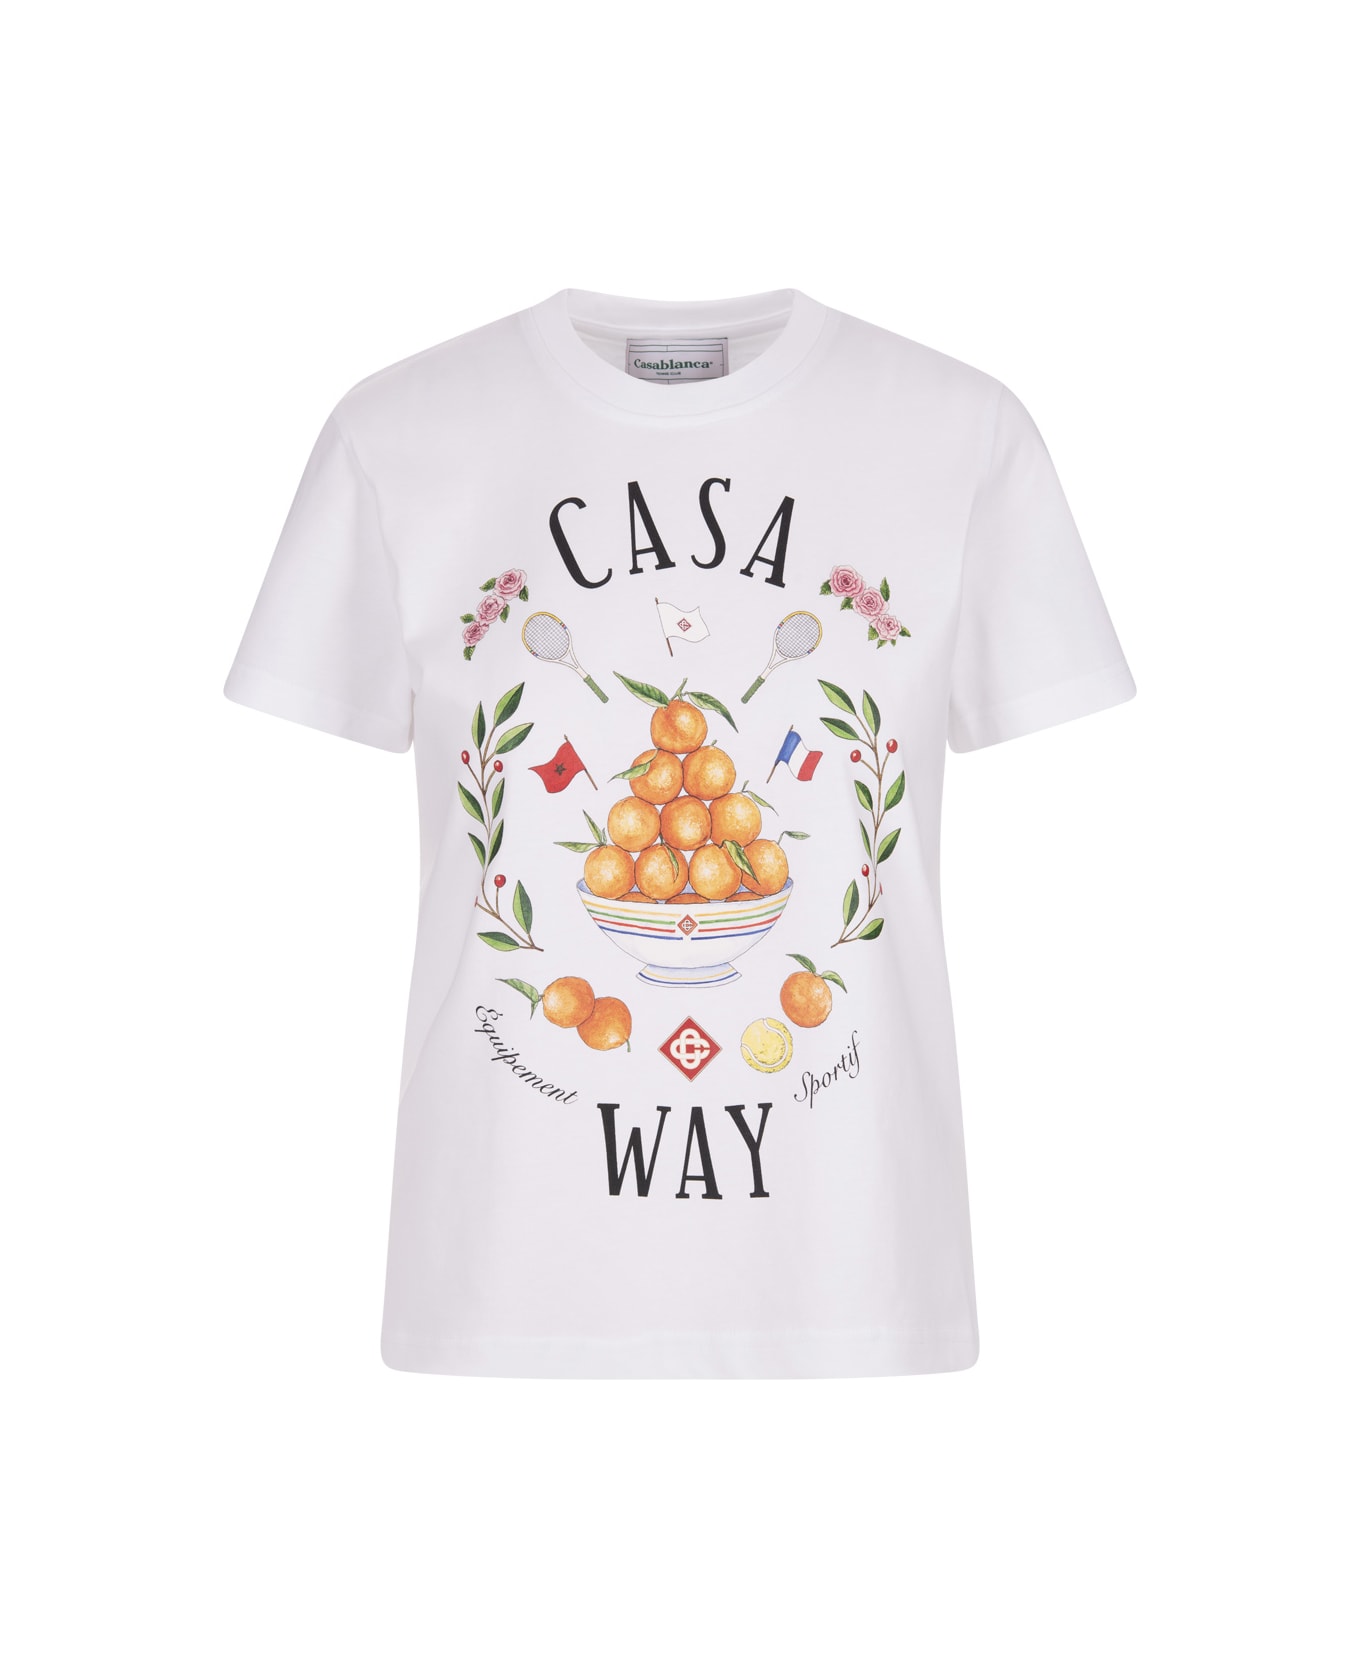 Casablanca Casa Way T-shirt In White - White